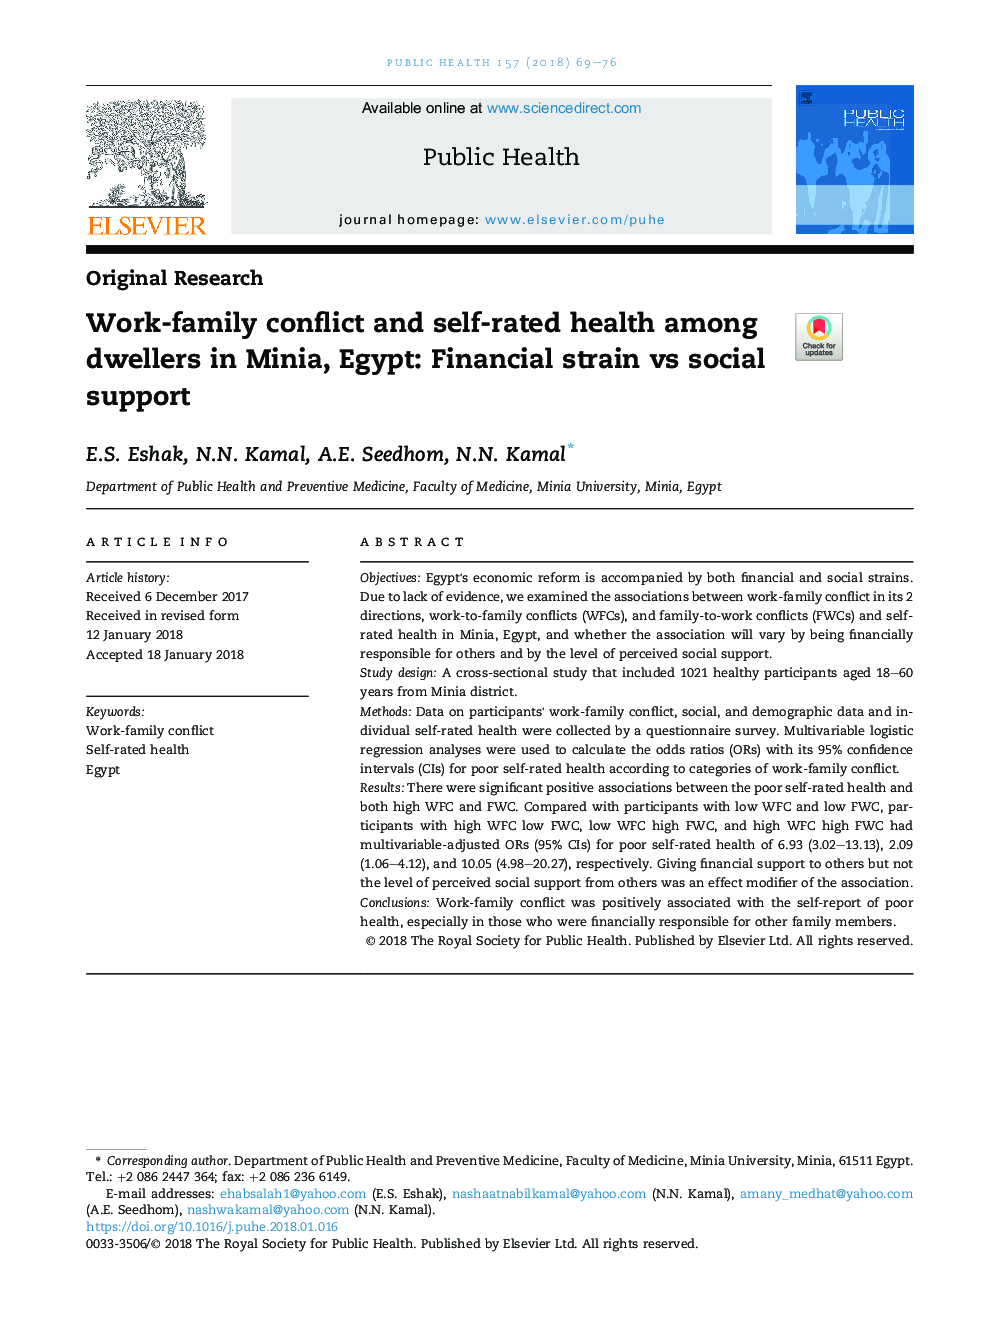 درگیری های خانوادگی و خانوادگی در بین ساکنان مینیا، مصر: فشار مالی در مقابل حمایت اجتماعی 